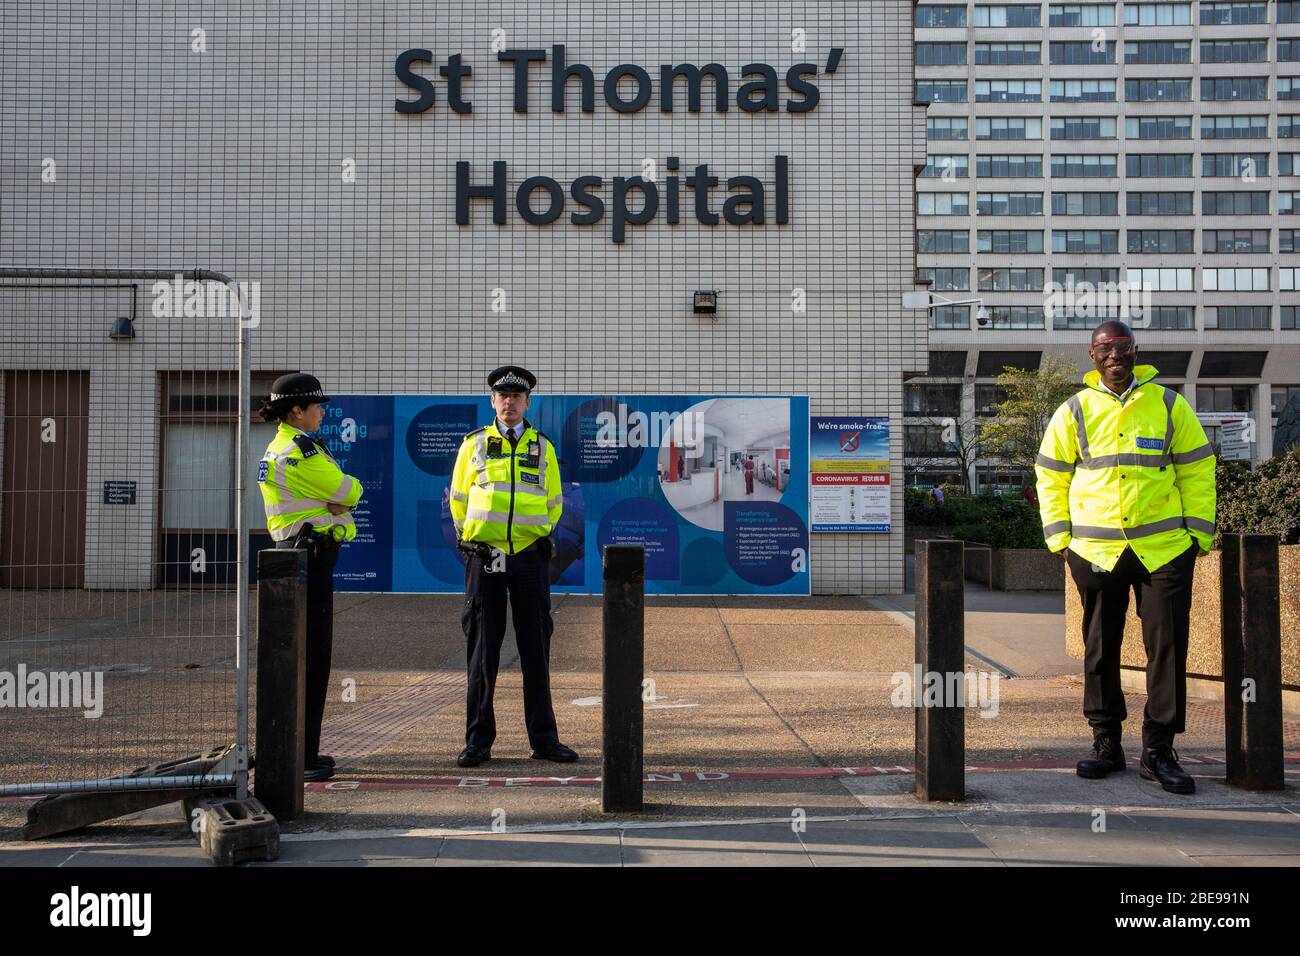 St Thomas' Hospital London, donde el primer Ministro británico se alojó recientemente en la sala de cuidados intensivos para recibir tratamiento contra el Coronavirus COVID-19, Londres, Inglaterra Foto de stock